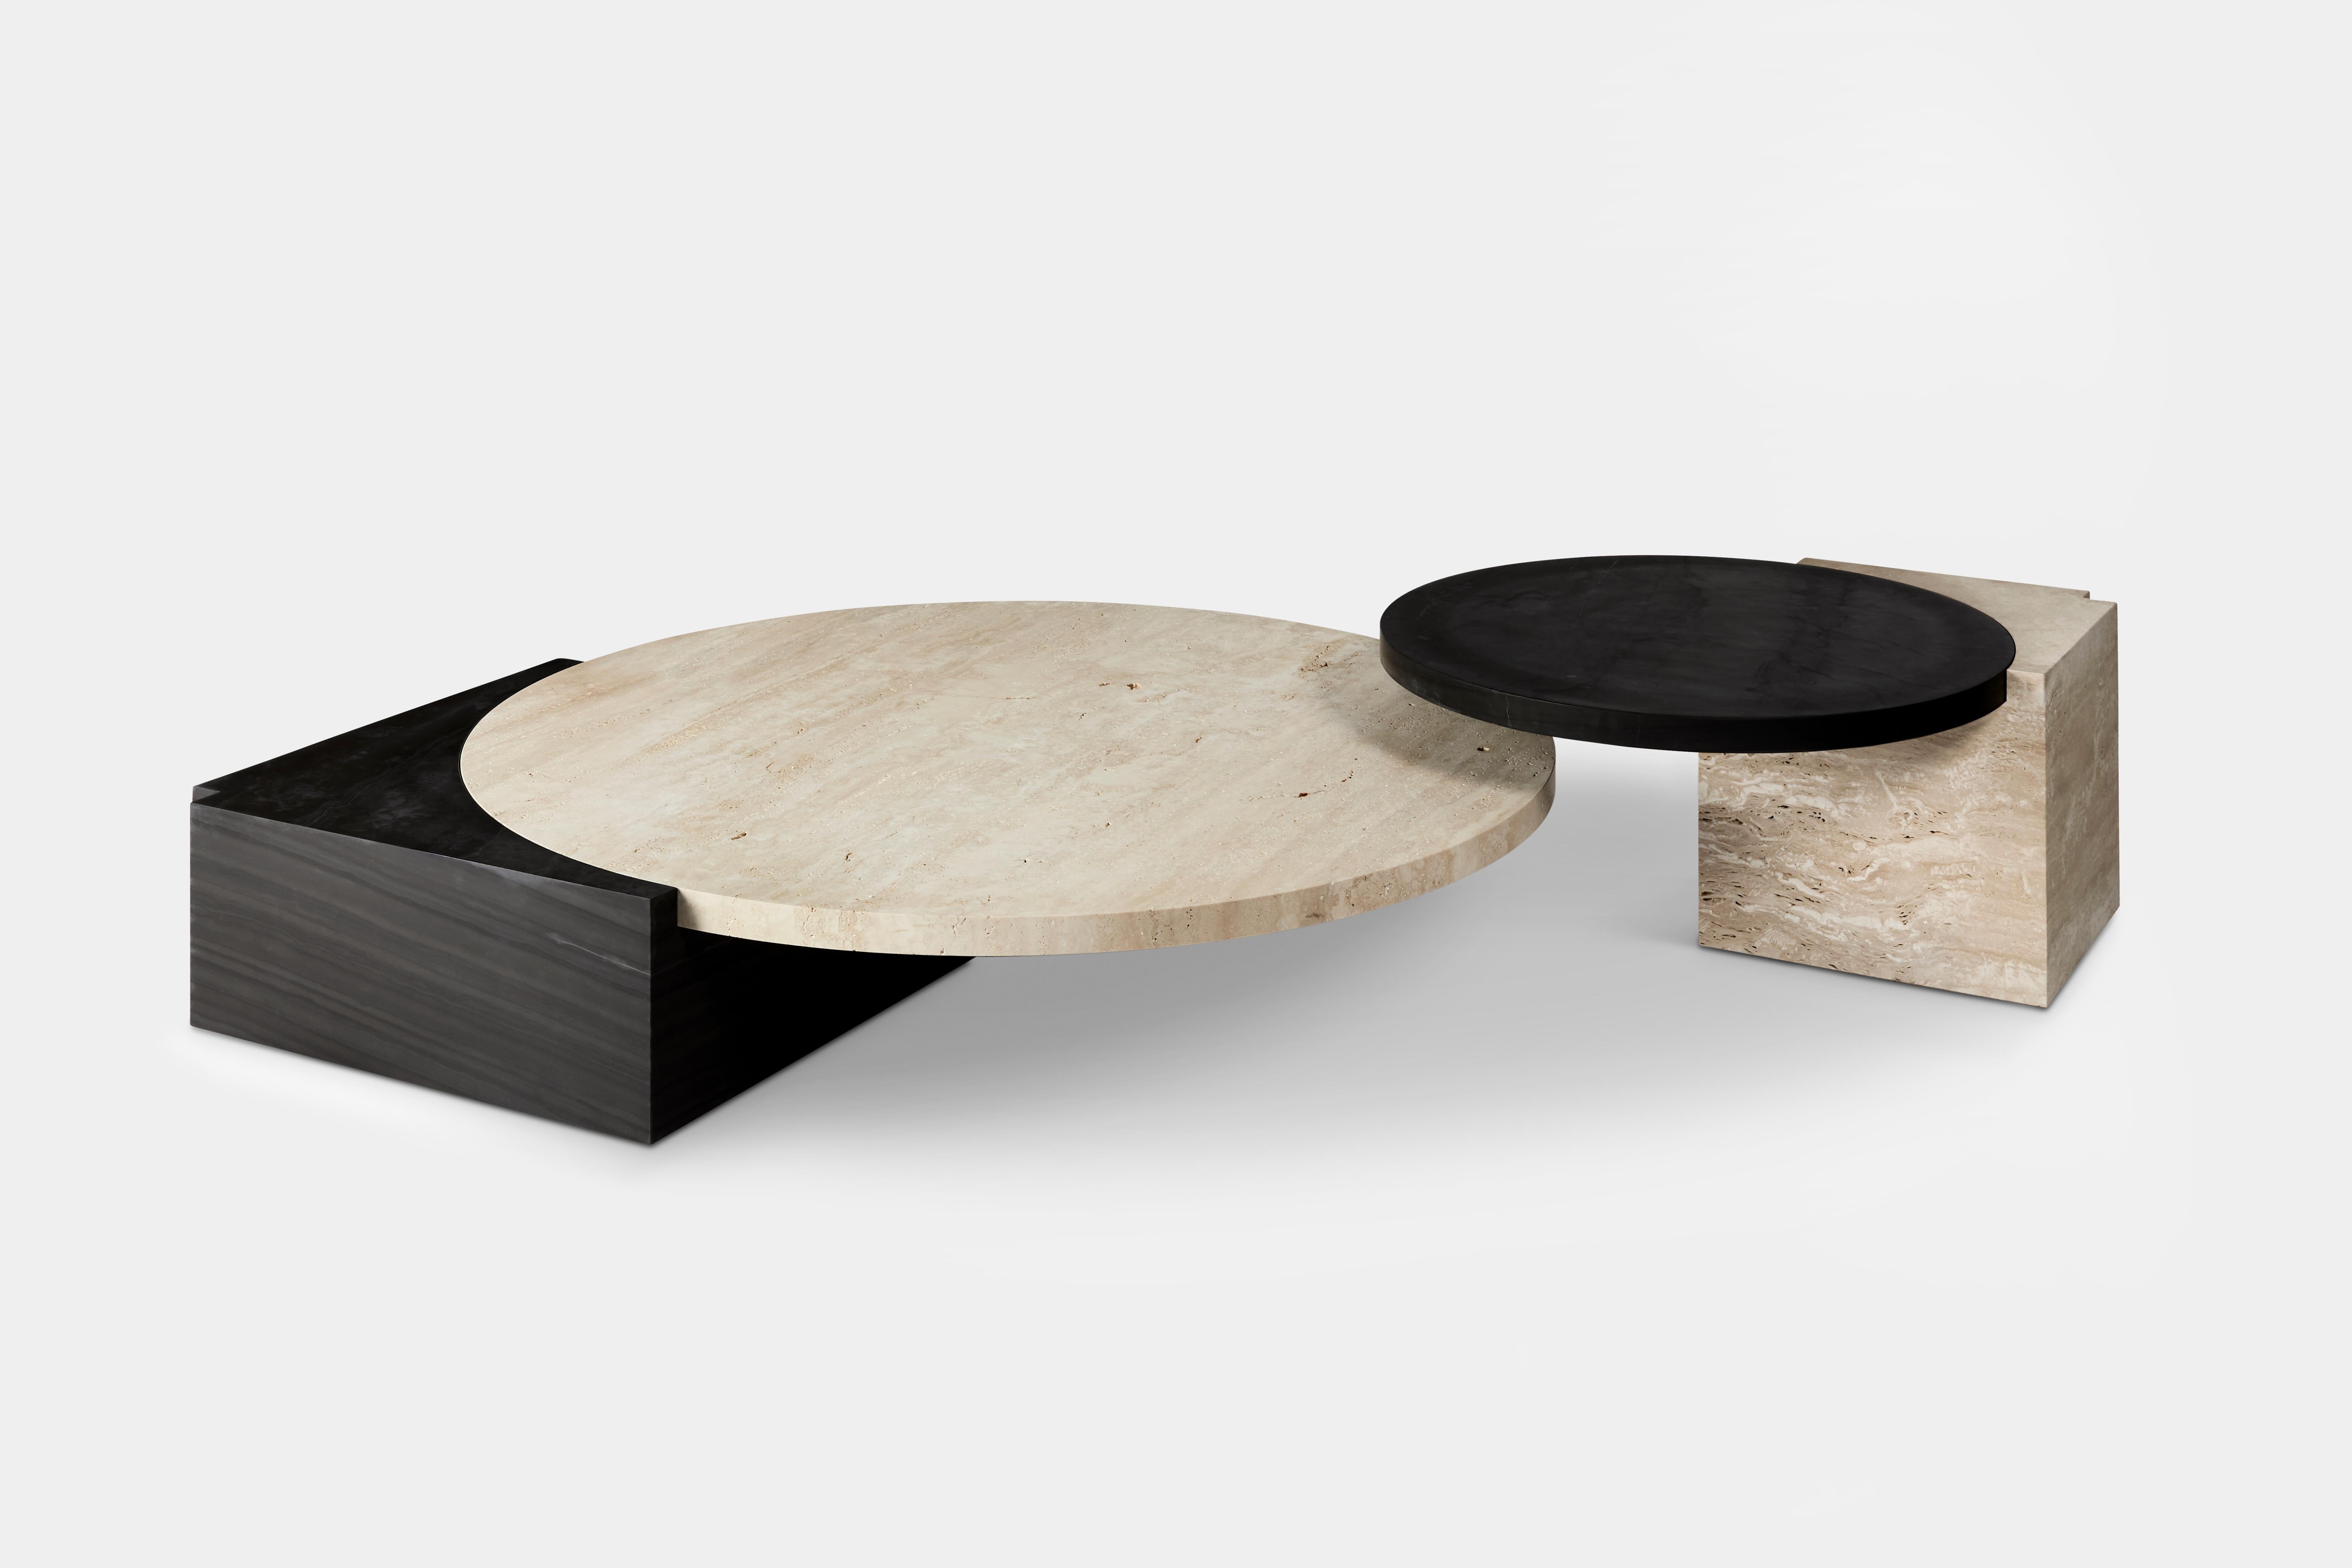 Les tables Tribeca sont une série de tables d'appoint et de tables basses sculpturales qui reflètent le même concept de flottement que le canapé, semblant défier les lois de la gravité. 

Fabriquée en marbre de soie noir et en travertin, avec des